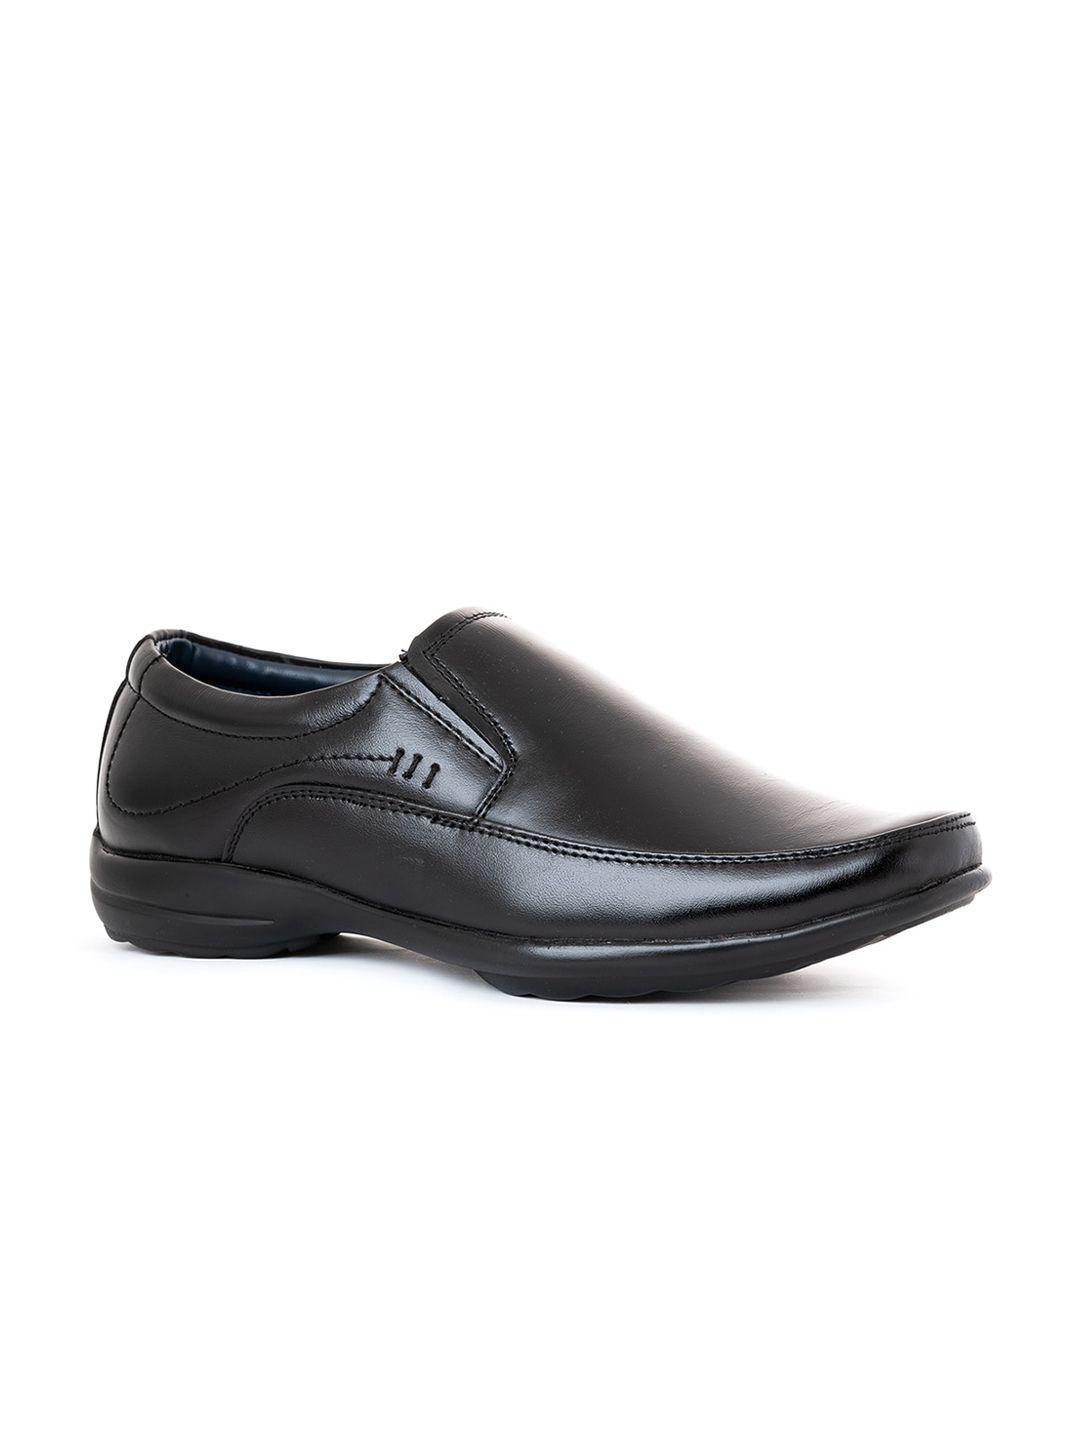 khadims men black leather slip on formal loafers